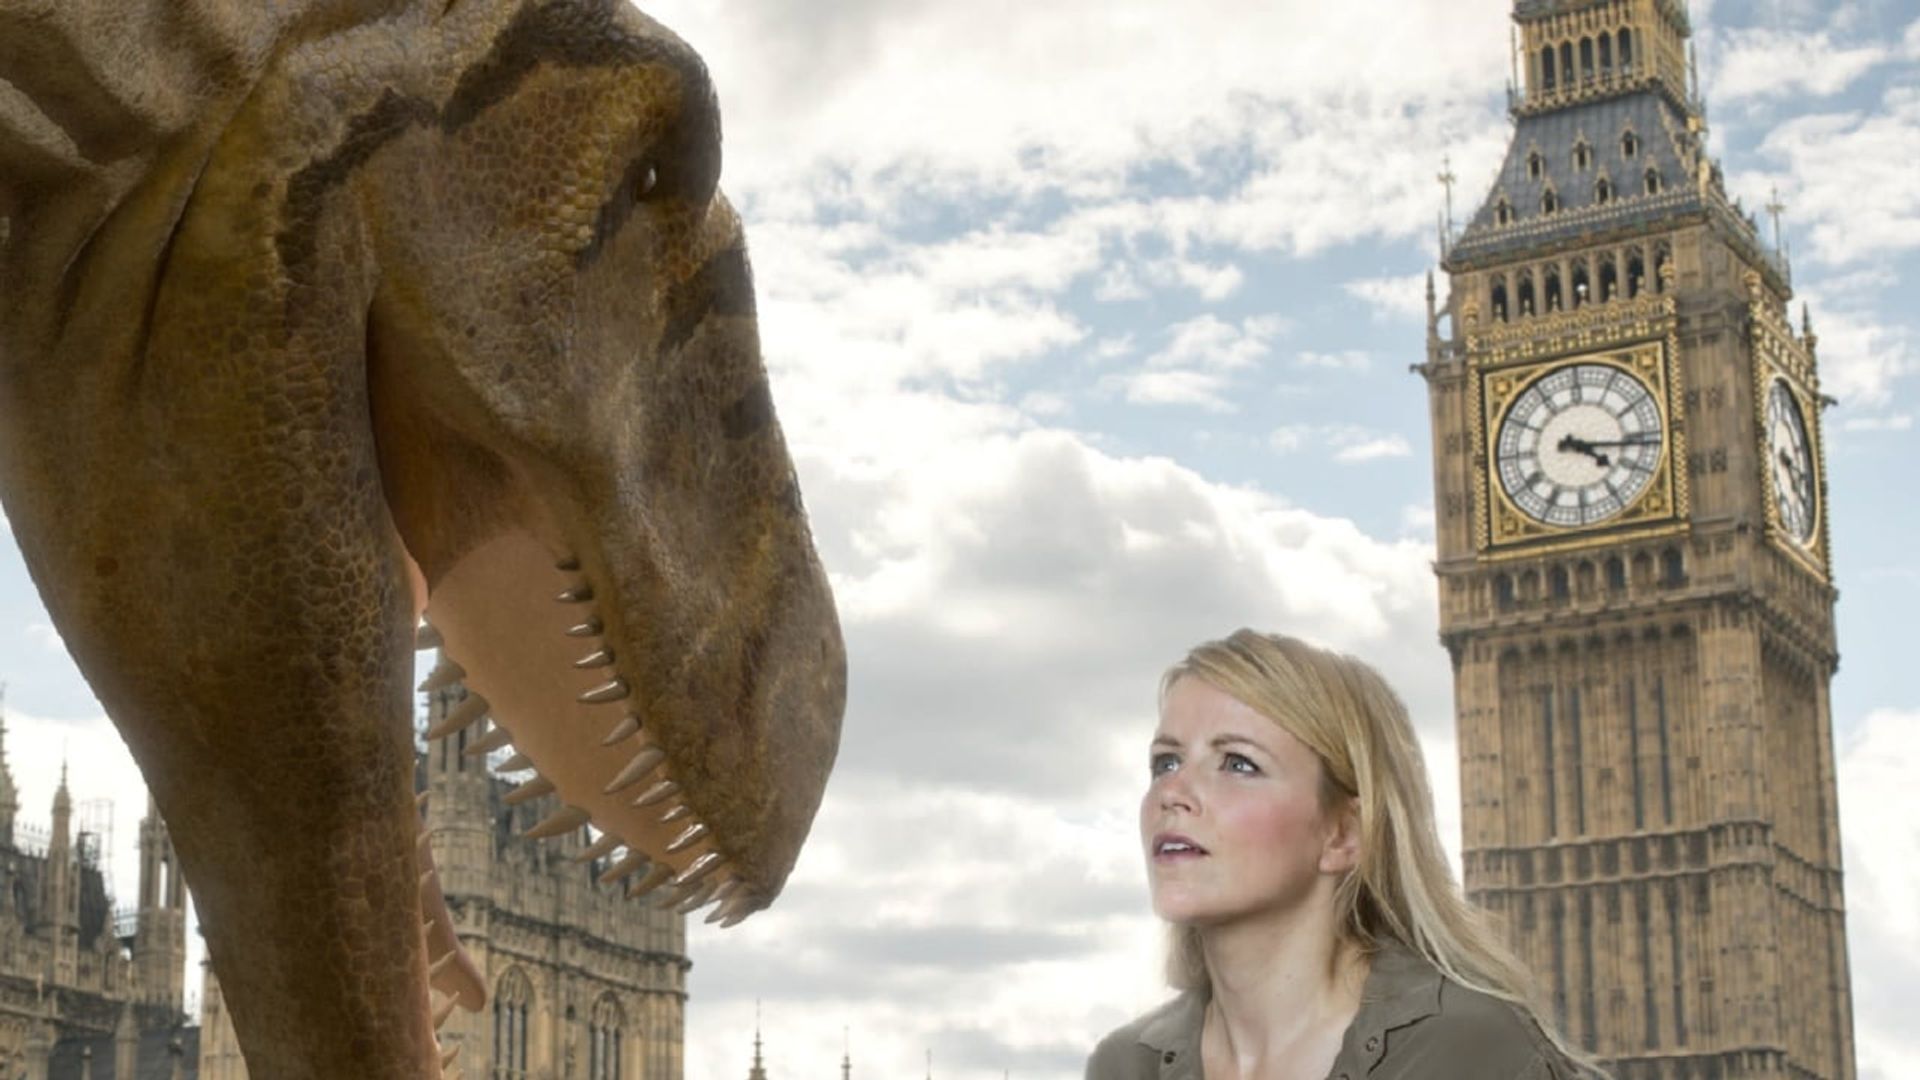 Dinosaur Britain background